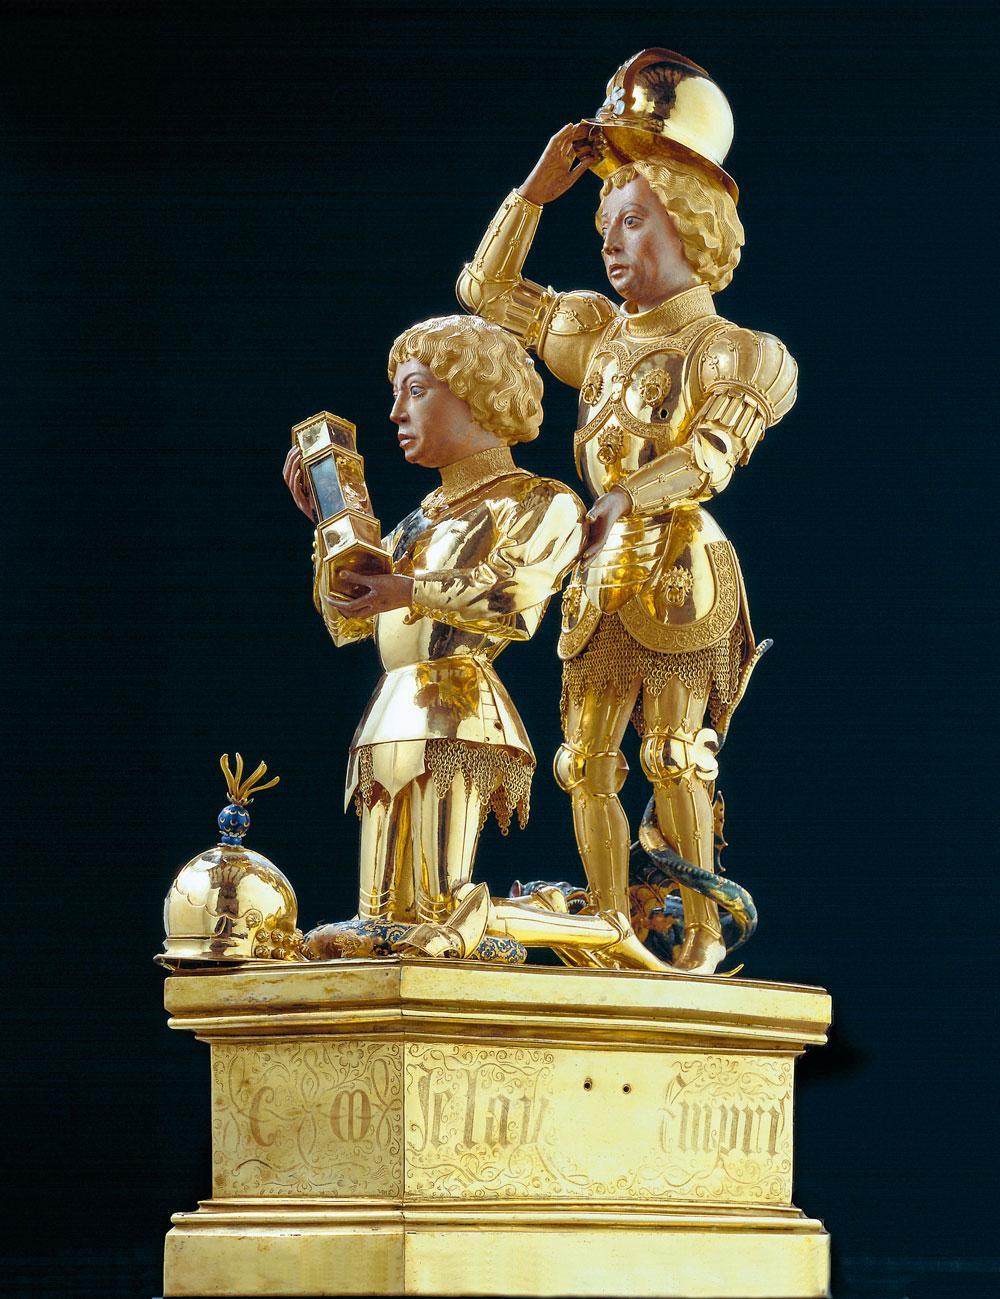 Le reliquaire de Charles le Téméraire, bijou d'orfèvrerie en or massif offert en 1471 par le duc de Bourgogne à la cathédrale de Liège. Non pour se faire pardonner son forfait mais pour affirmer son titre de 